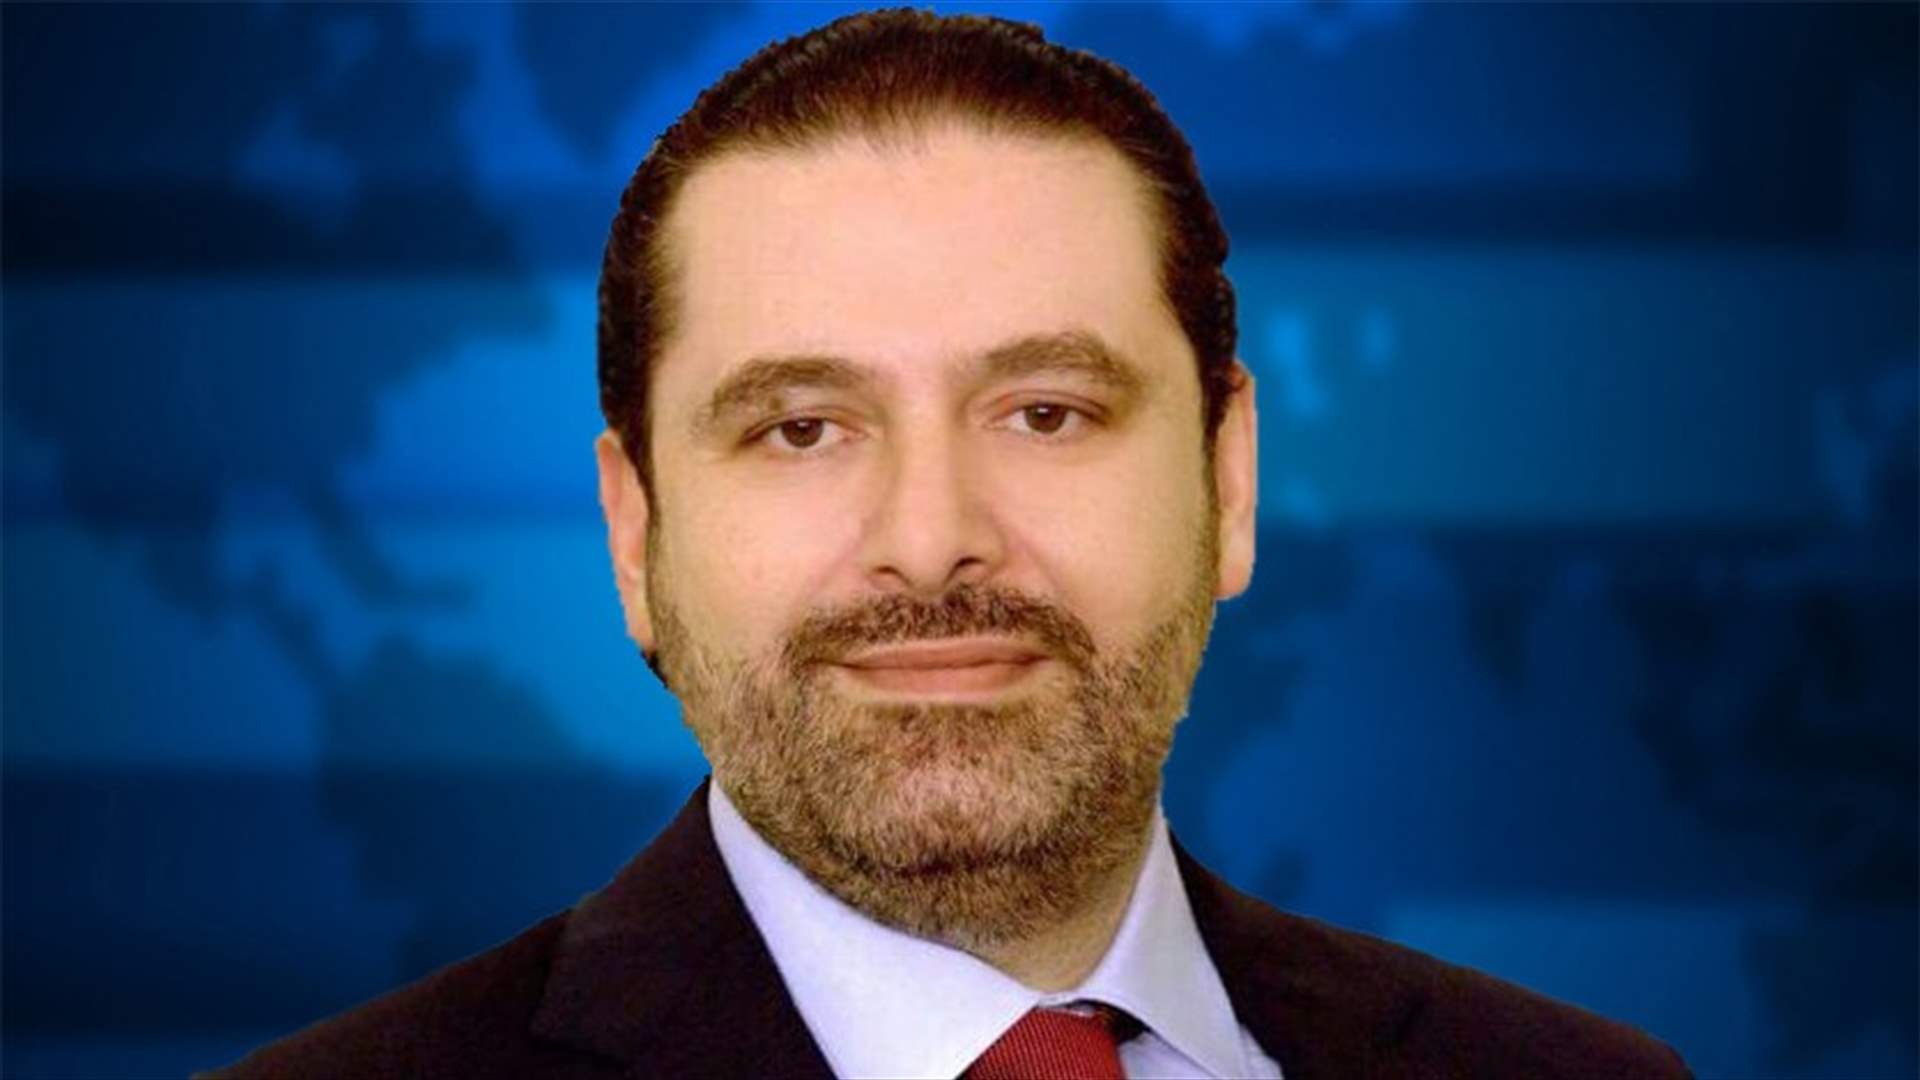 الحريري يوضح ما يتم تداوله حول طرحه لأسماء مرشحين لرئاسة الحكومة